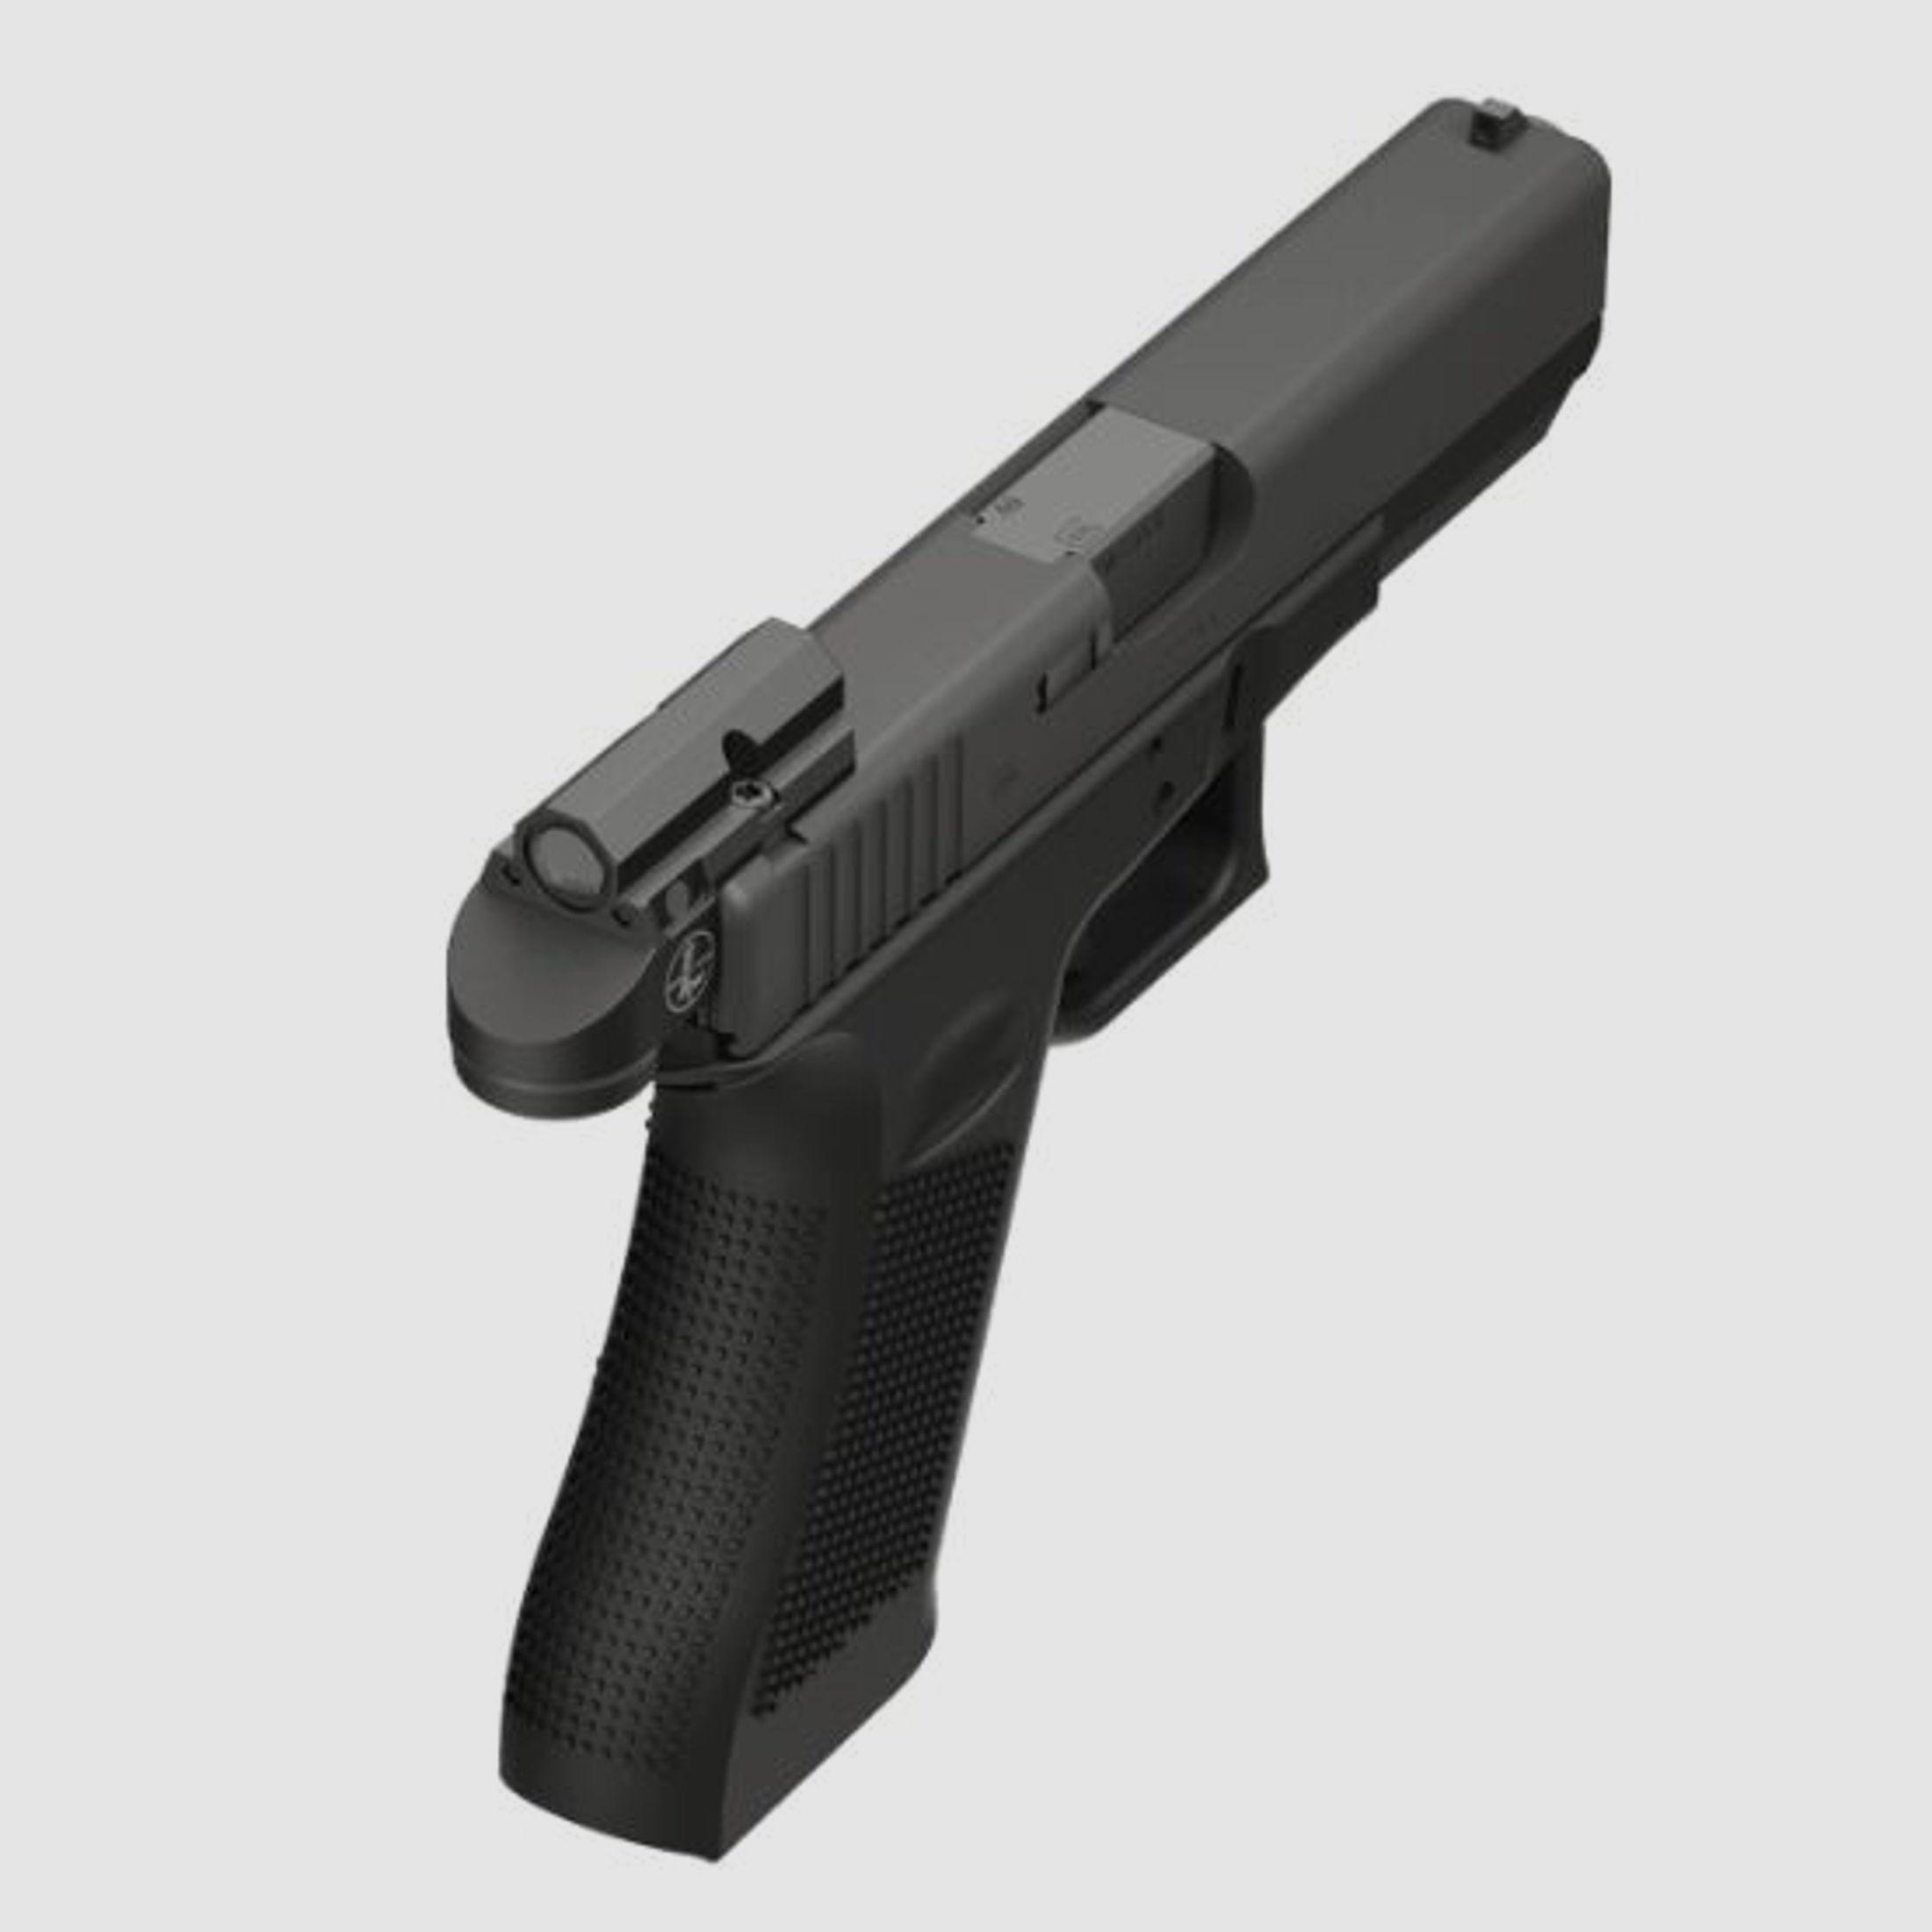 Leupold	 Delta Point Micro (Glock)